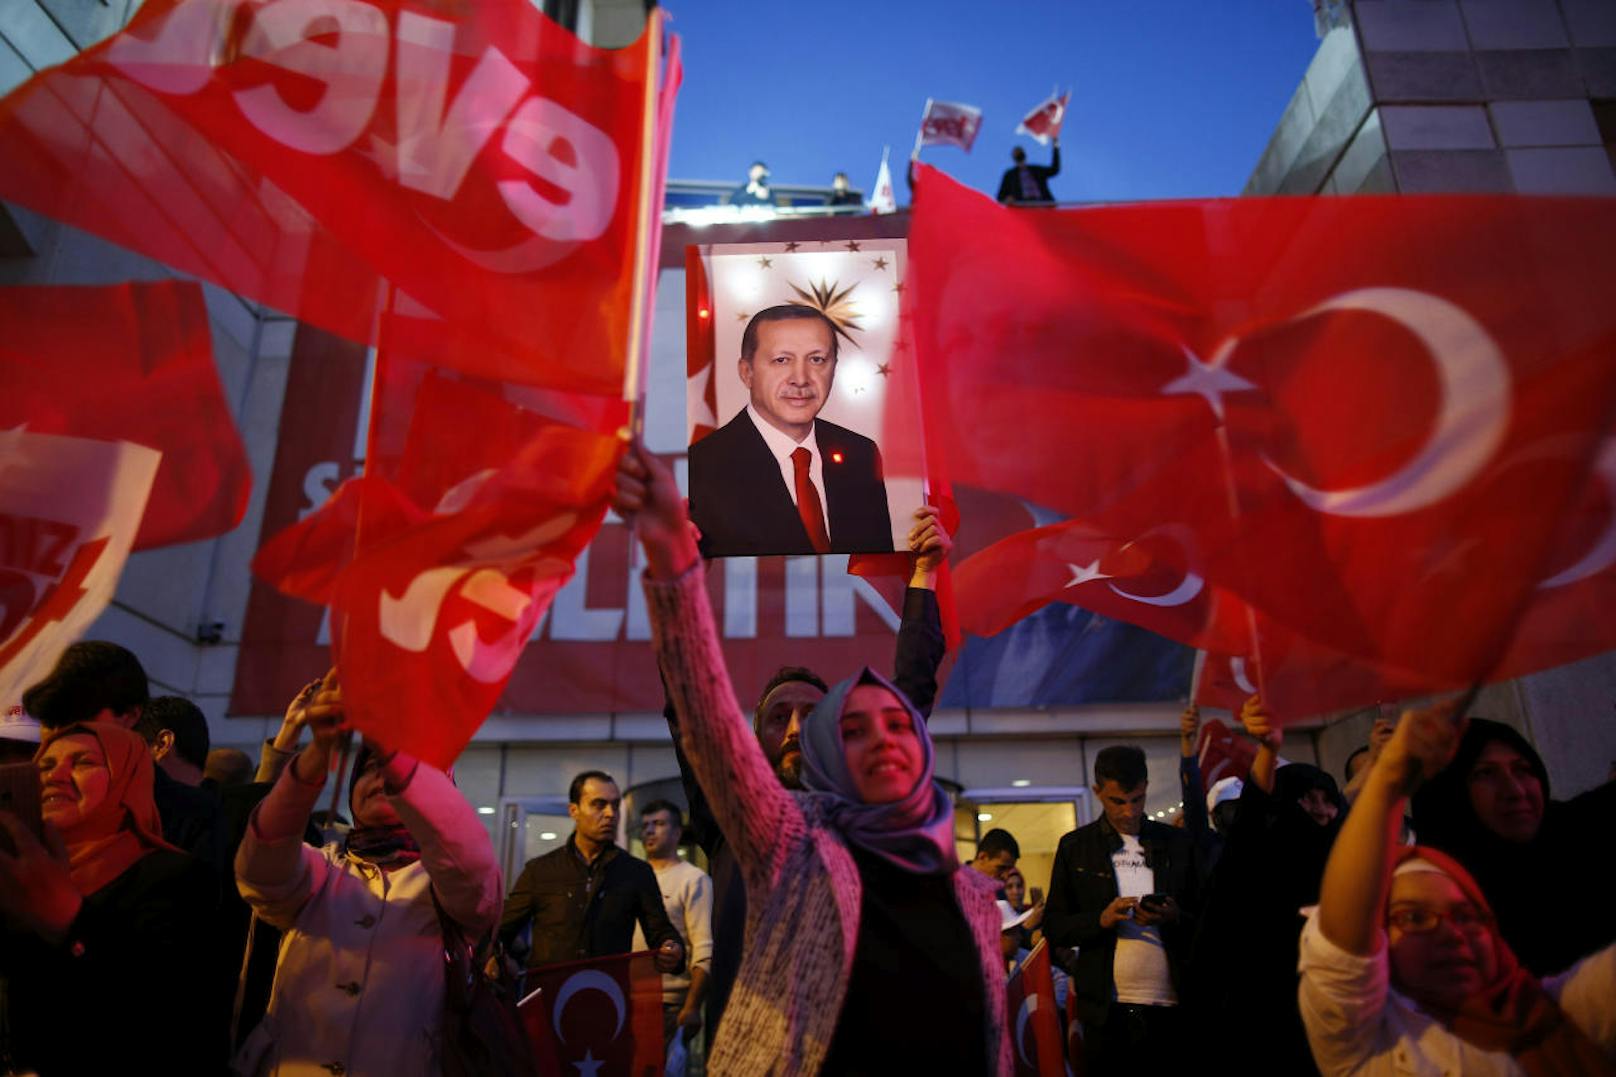 Das Ja-Lager hat sich in der Türkei durchgesetzt, allerdings mit einer knappen Mehrheit und zahlreichen Manipulationsvorwürfen.